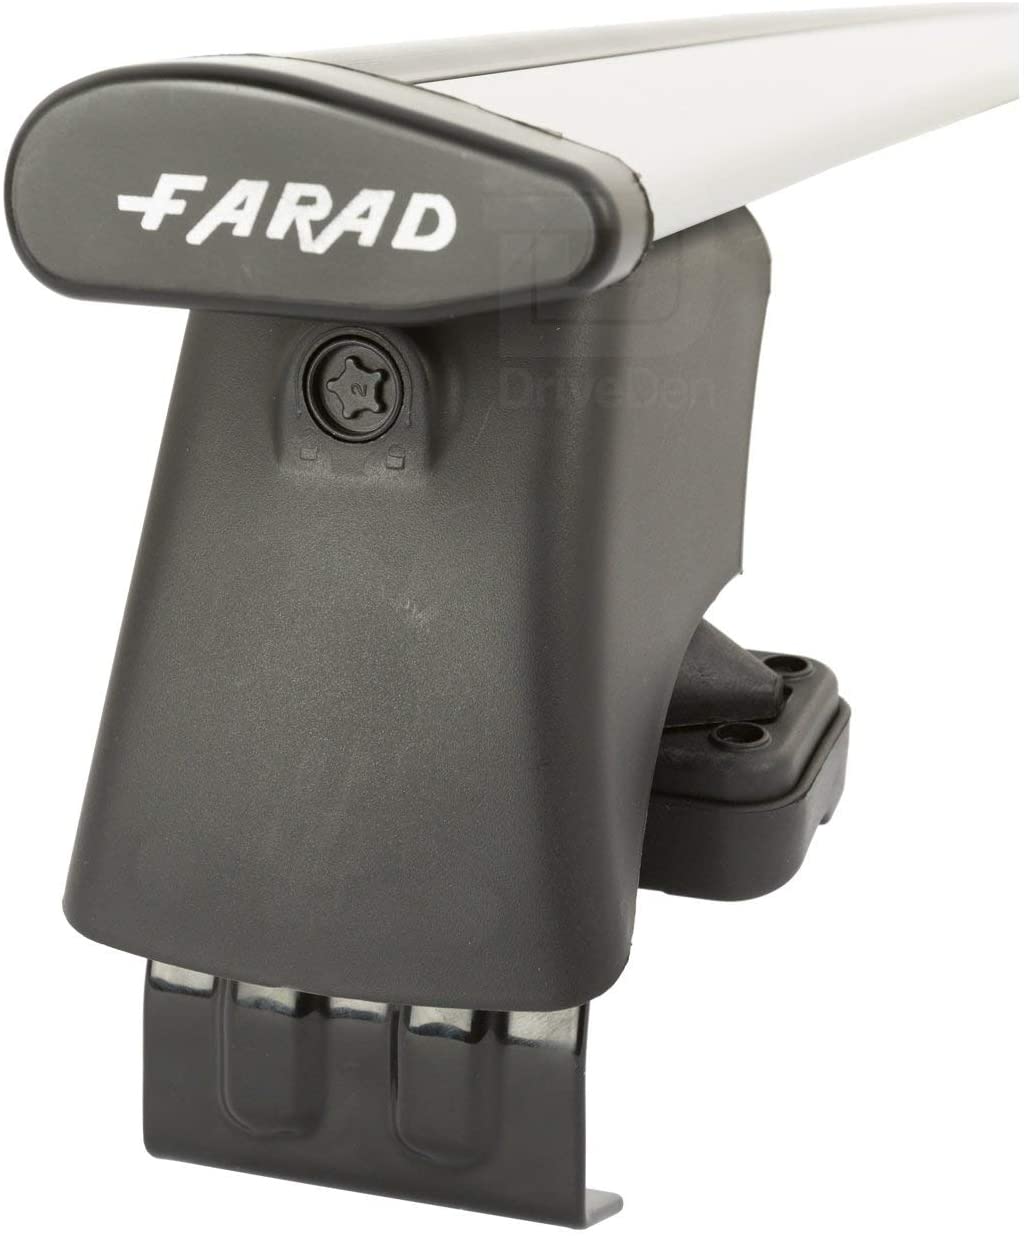 FARAD-Kit H2 per barre portatutto - Hyundai I 10 2020> (senza corrimano)